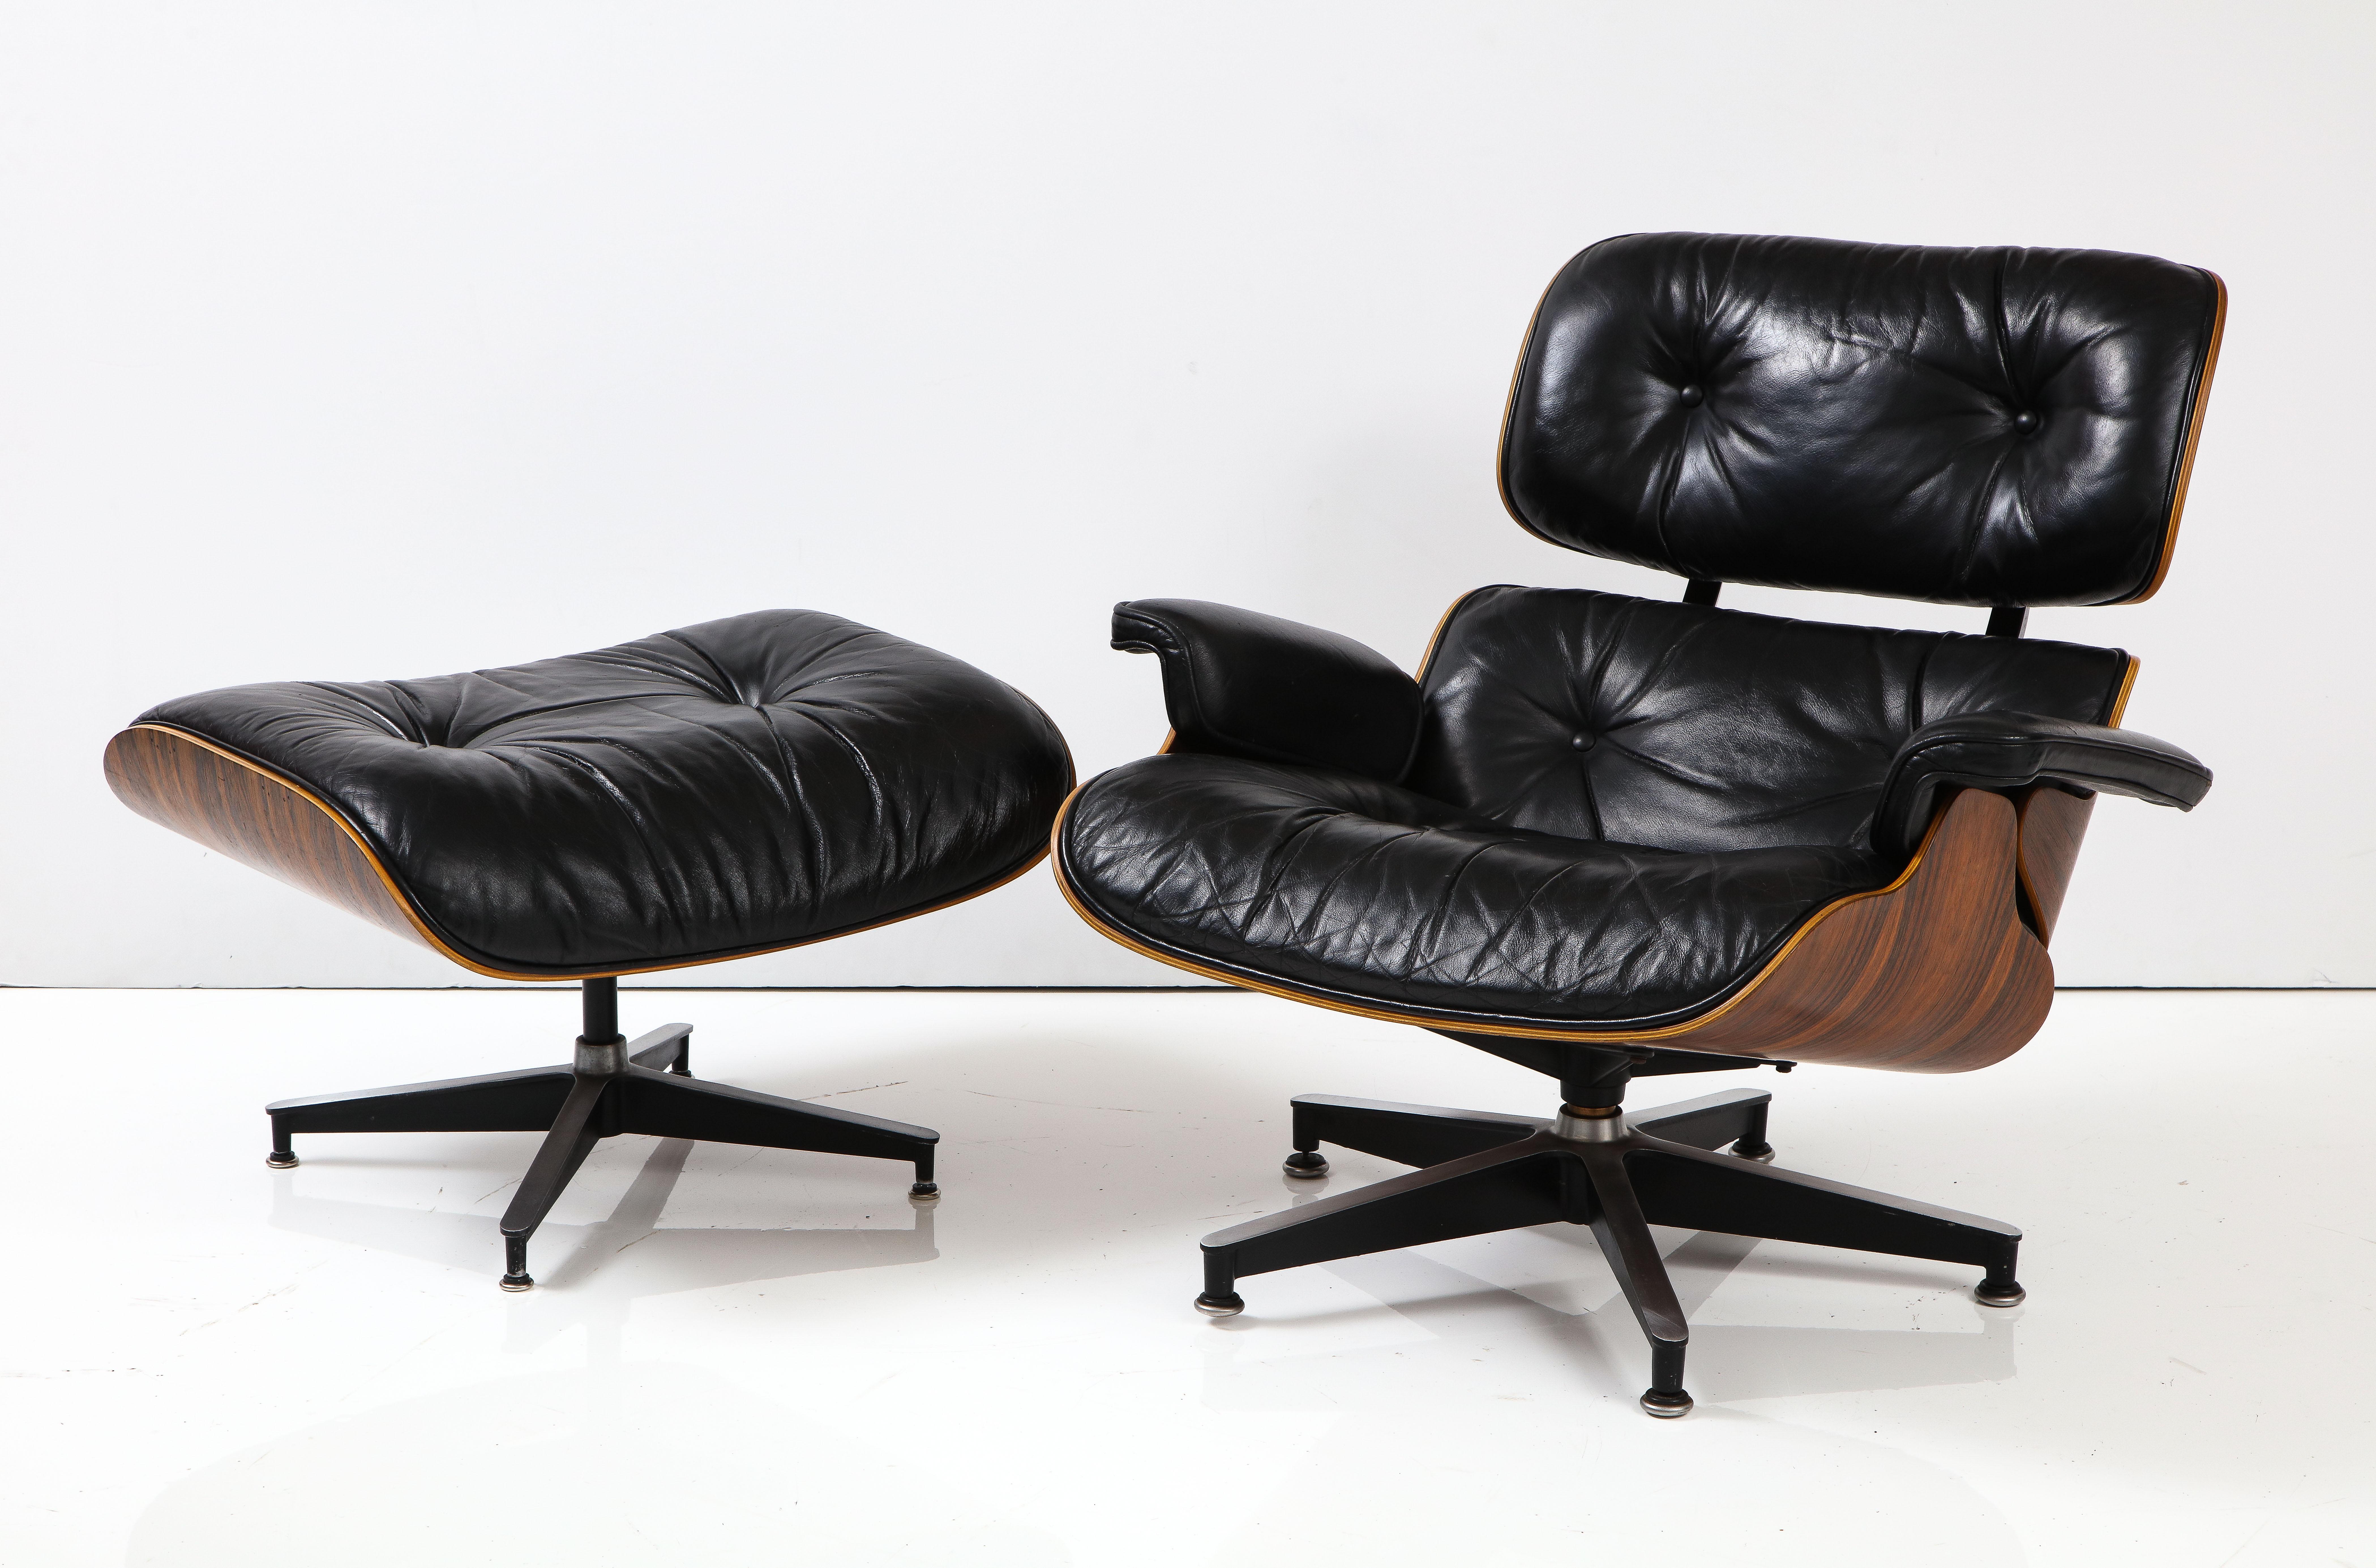 Atemberaubende 1970er Mid-Century Modern Eames brasilianischen Palisander und Leder Lounge-Stuhl und Ottomane von Herman Miller gemacht, von der ursprünglichen Besitzer, der es im Jahr 1971 bekam gekauft, in Vintage Originalzustand mit einigen